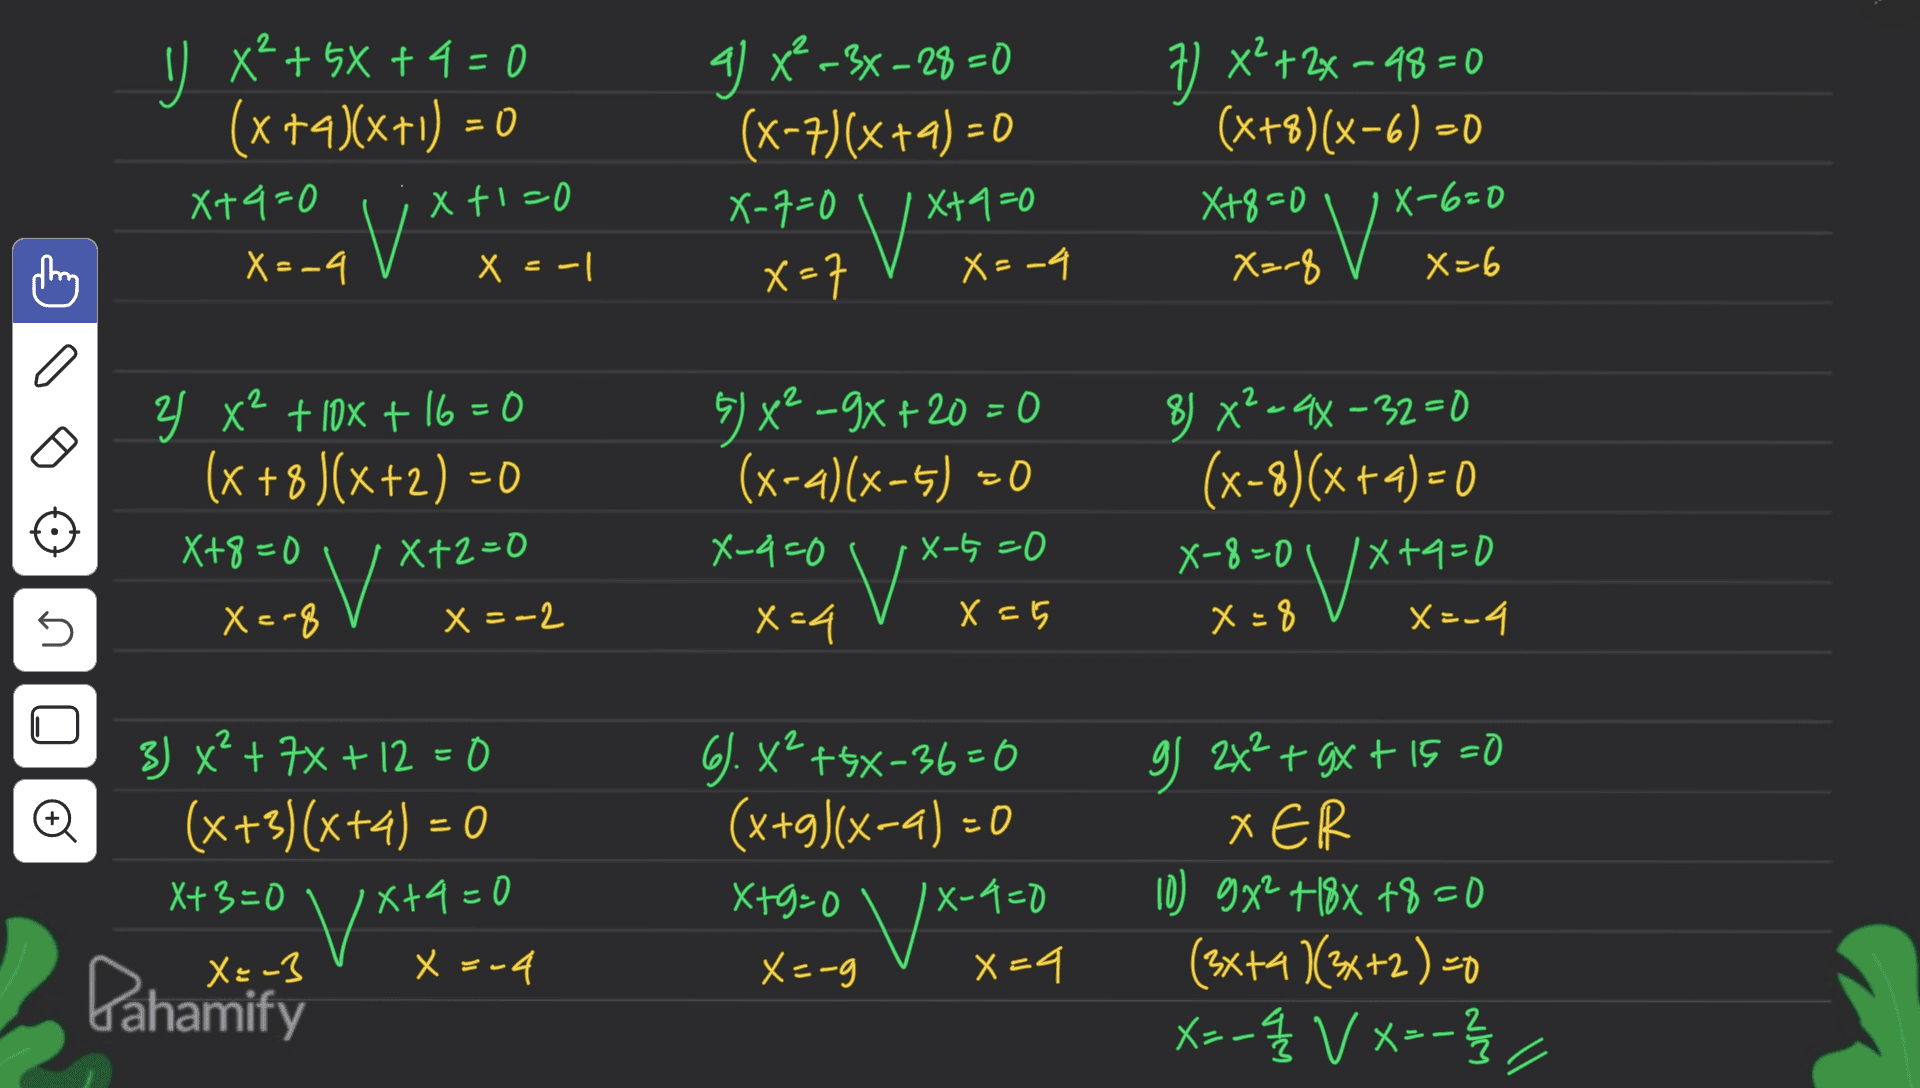 - U x4 + 5x + 4 = 0 (x +4)(x+1) = 0 X+4=0 Xt1=0 V X=-4 X = -1 g) x -3x – 28 =0 (x-7)(x+2) = 0 X-7=0 Xta=0 V* x=7 X=-4 7) x²+2x-48=0 (x+8)(x-6) - 8 X=-8 X+8=0 | X-6=0 X0 X=6 a 2 Y x+ 10x + 16 = 0 (x +8 )(x+2) = 0 X+8=0 IX+2=0 5) x2 -9x + 20 = 0 (x-4)(x-1) =0 X-4=0 X-t=0 8) X²=44-32=0 (x-8)(x + 4) = 0 X-8=0 IX+4=0 x+ 0 x=8 X=-4 V 5 X=-8 x = -2 x=4 X = 5 2 Đ 3) x² + 7% + 12 = 0 (x+3)(x+4) = 0 X+3=0 6. x² +5X-36=0 (x+3)(x-4) = 0 X+9=0 X-9=0 X=-g X4 X+4=0 v X VX-700 g 2x² + 3x + 15 =0 + XER 10) 9x2 +18X +8=0 (3x+4)(3x+2) =0 xs-q V X=-3 - X X 3-4 Pahamify 